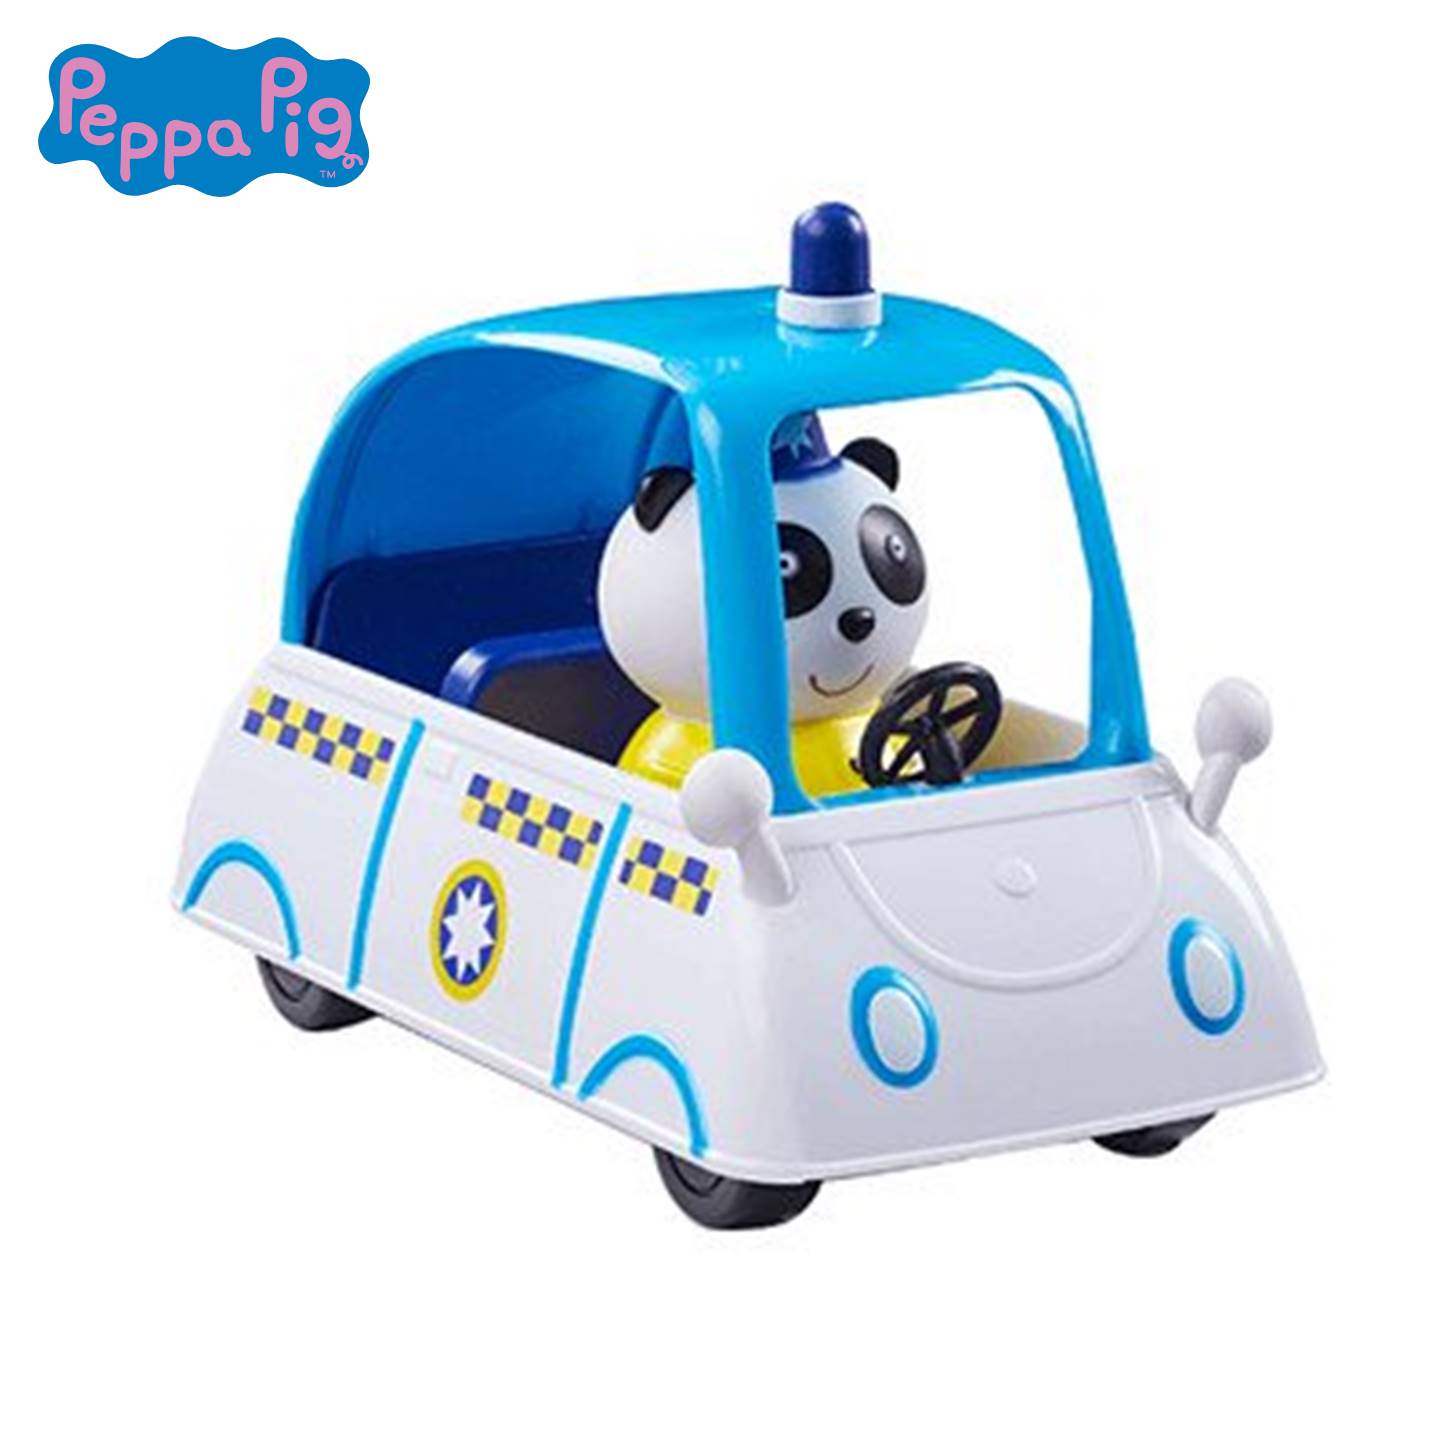 PP120667600000 Peppa Pig'S Vehicle Police Car (4)